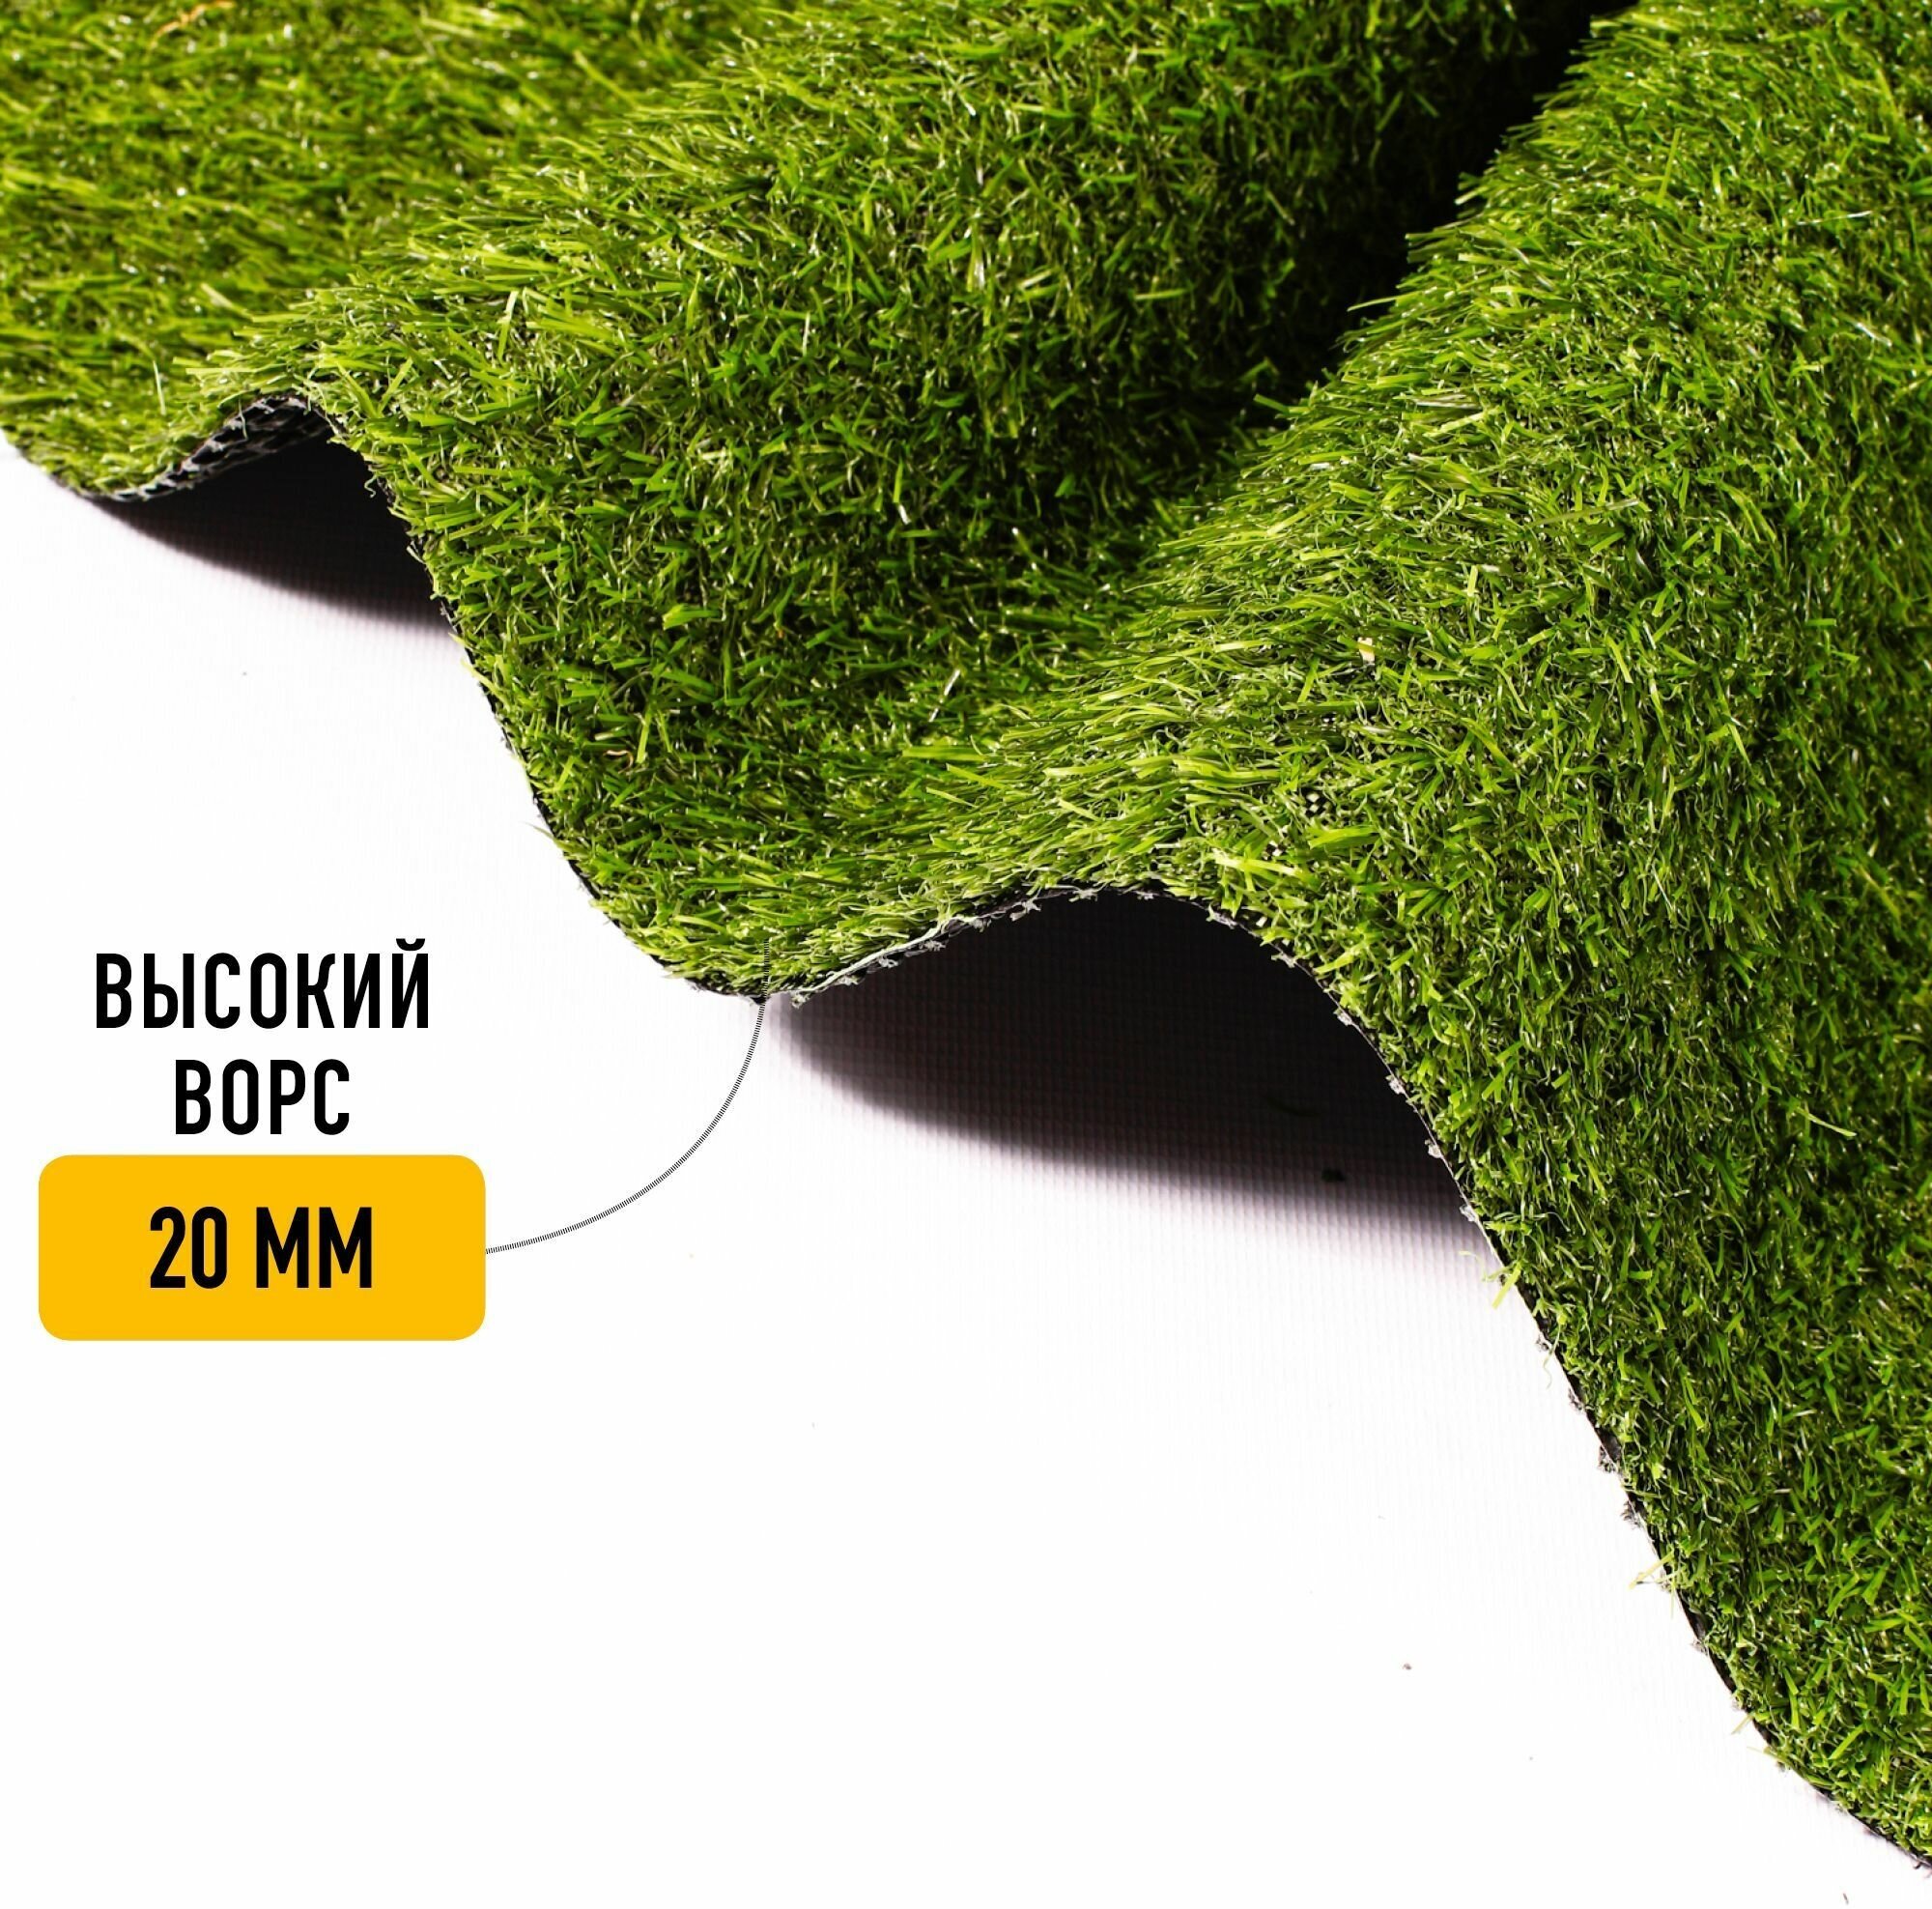 Искусственный газон в рулоне для декора 1,2х6,5м Premium Grass 20 Green, высота ворса 20 мм. Искусственная трава. - фотография № 11